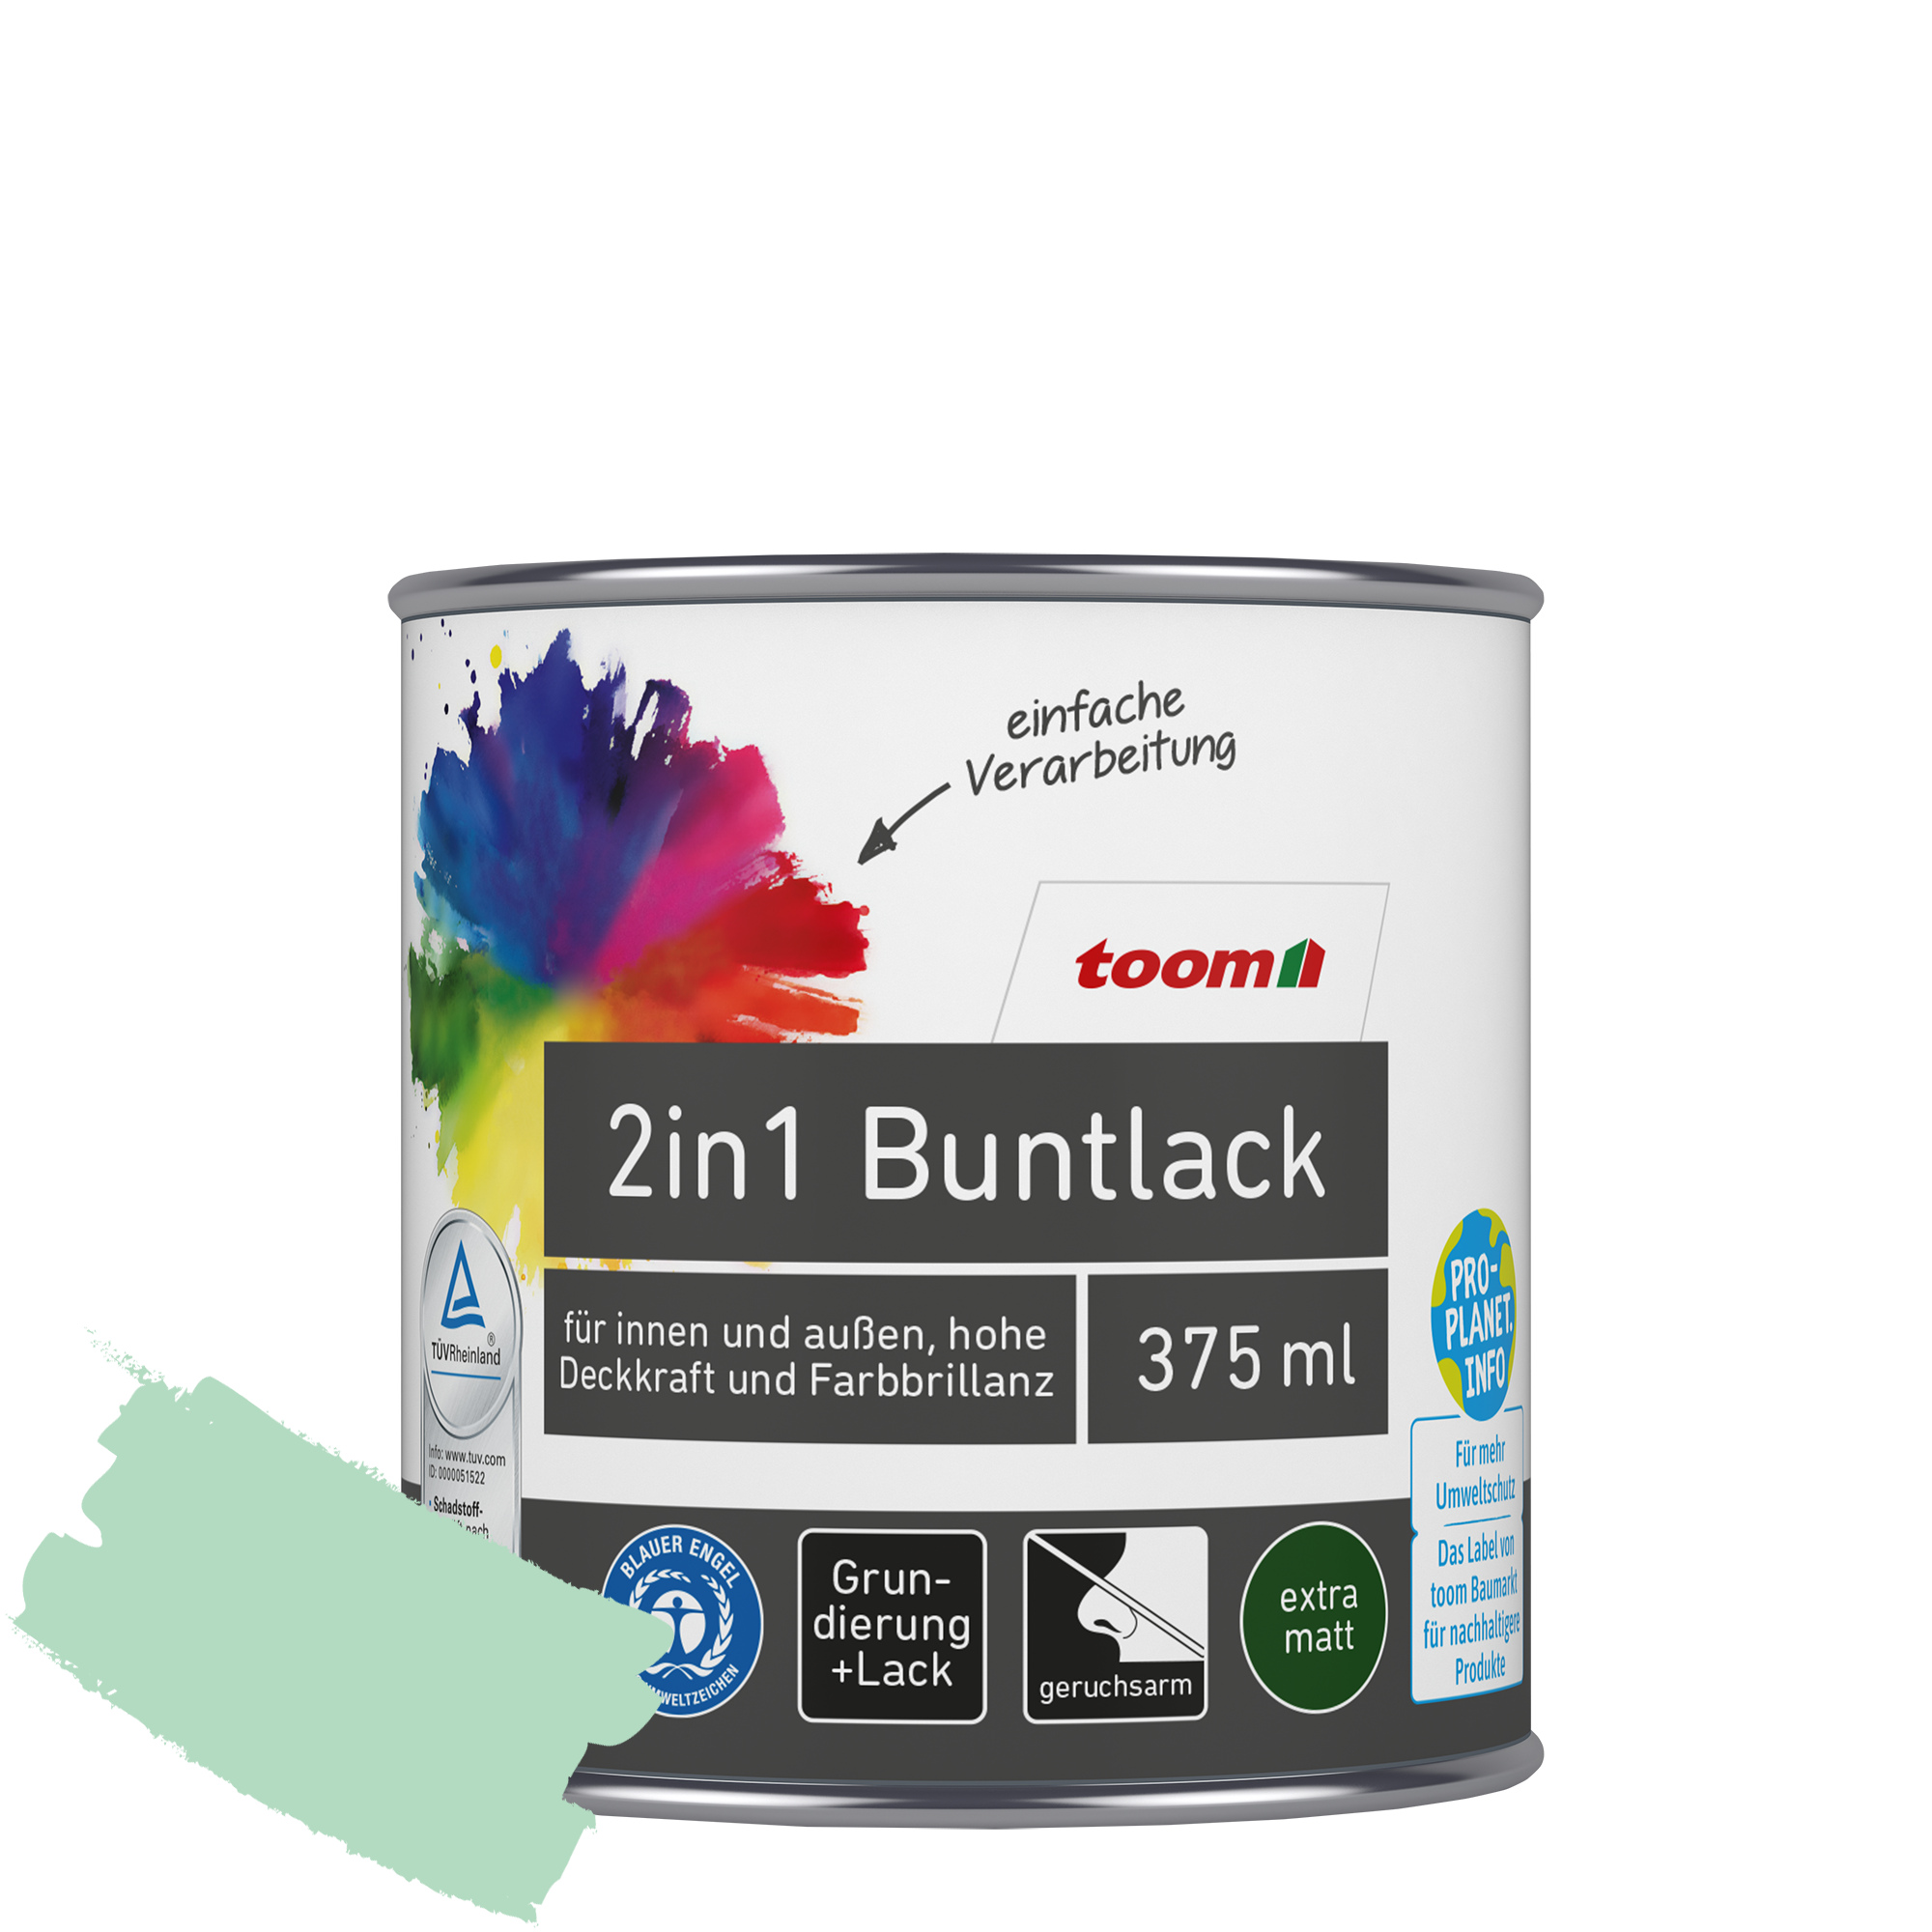 2in1 Buntlack minzgrün matt 375 ml + product picture